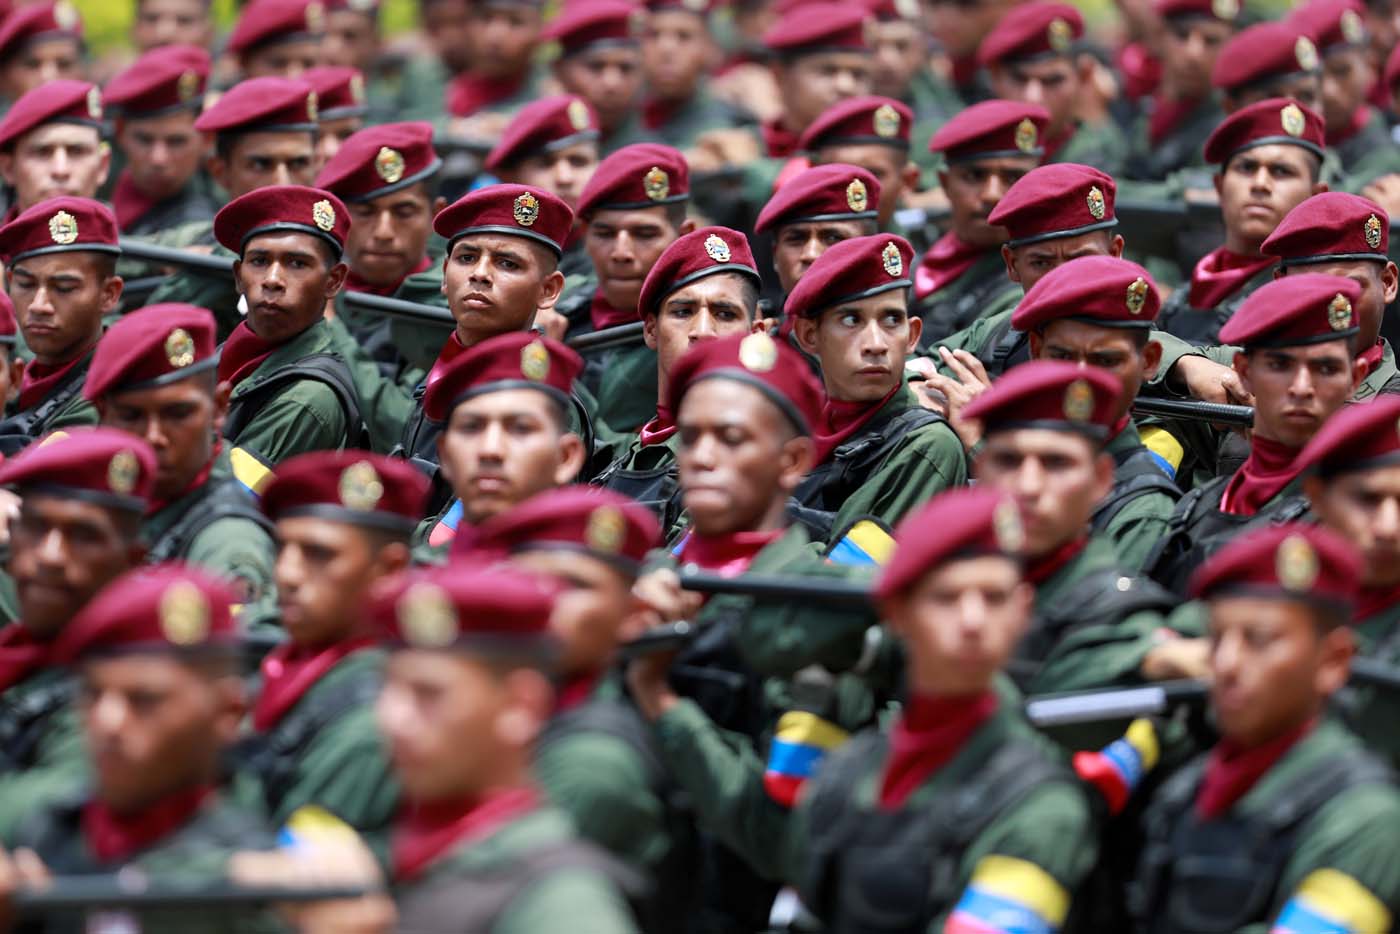  Soldados marchan durante el desfile del 5 de Julio en Caracas, Venezuela, July 5, 2017. REUTERS/Marco Bello